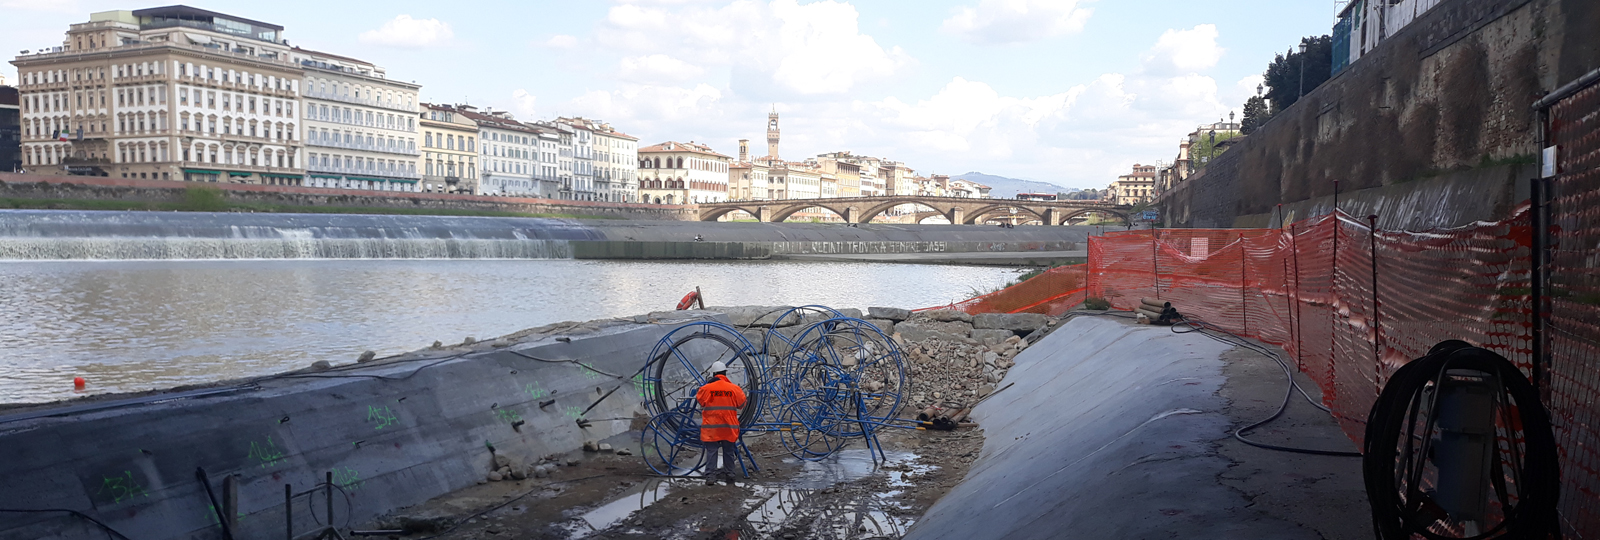 L'esperienza e la tecnologia Trevi per la messa in sicurezza del ponte Vespucci di Firenze | News Trevi Group Italia 1